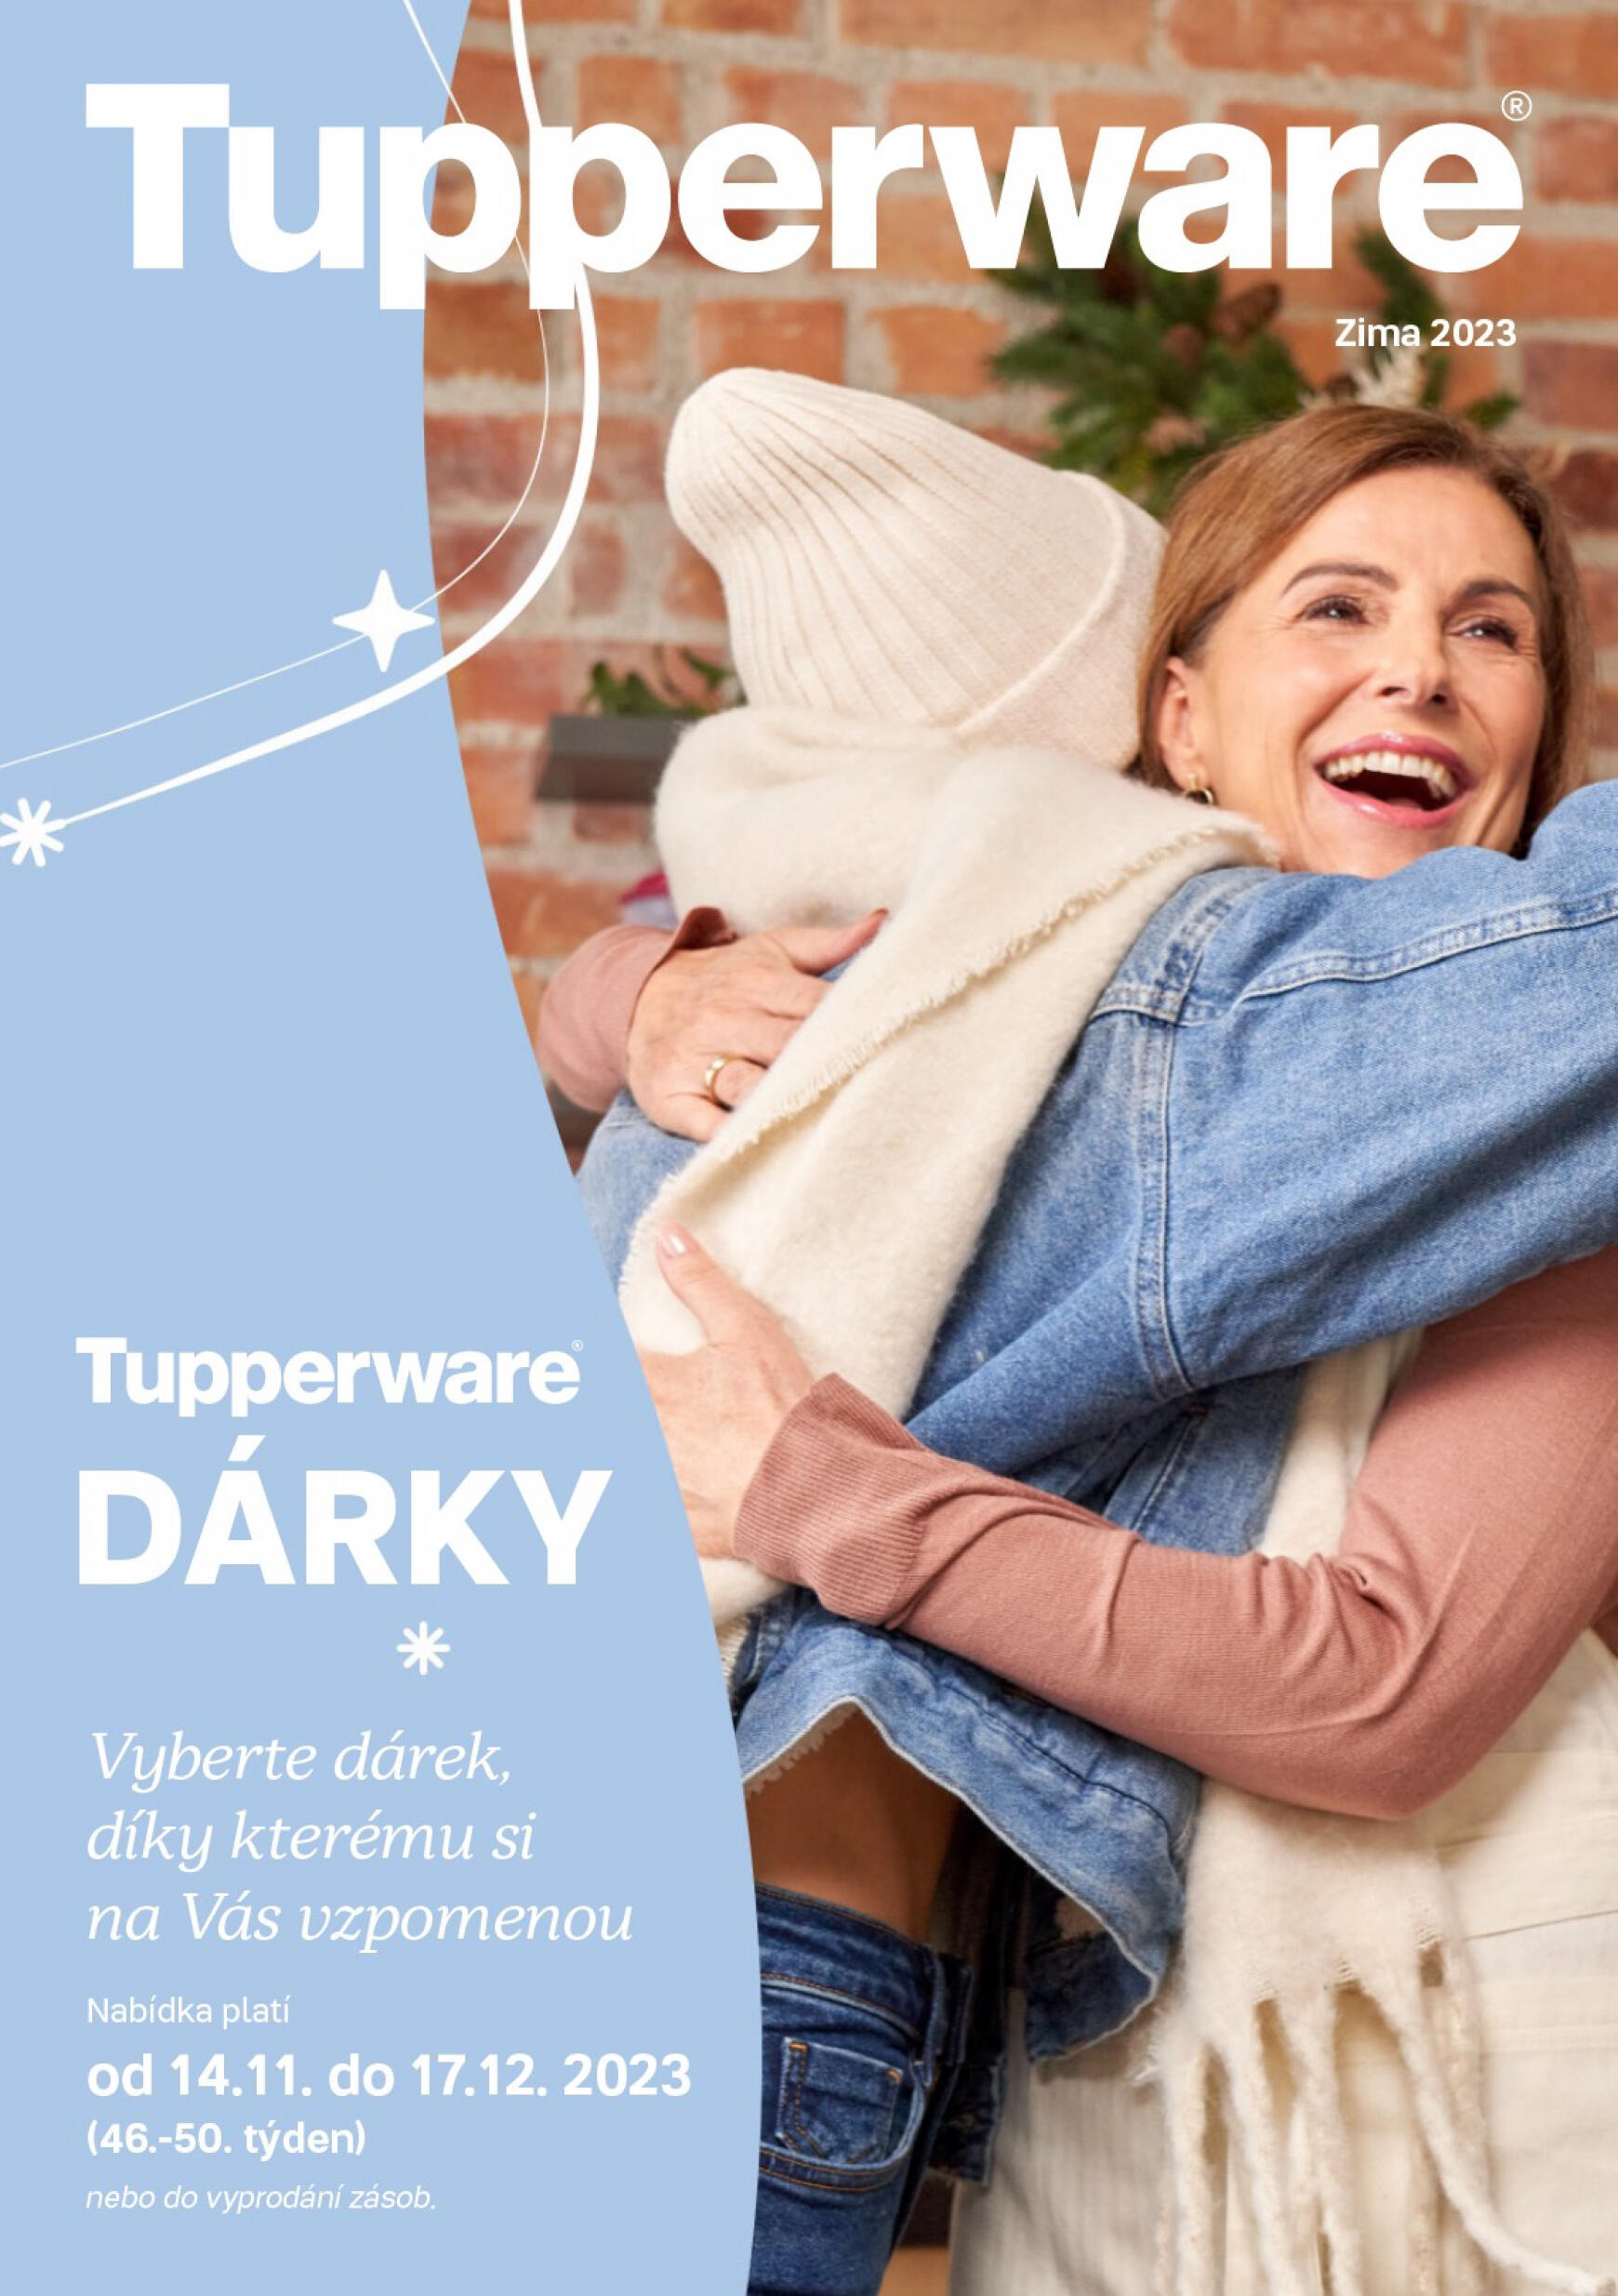 tupperware - Tupperware - Dárky platný od 14.11.2023 - page: 1